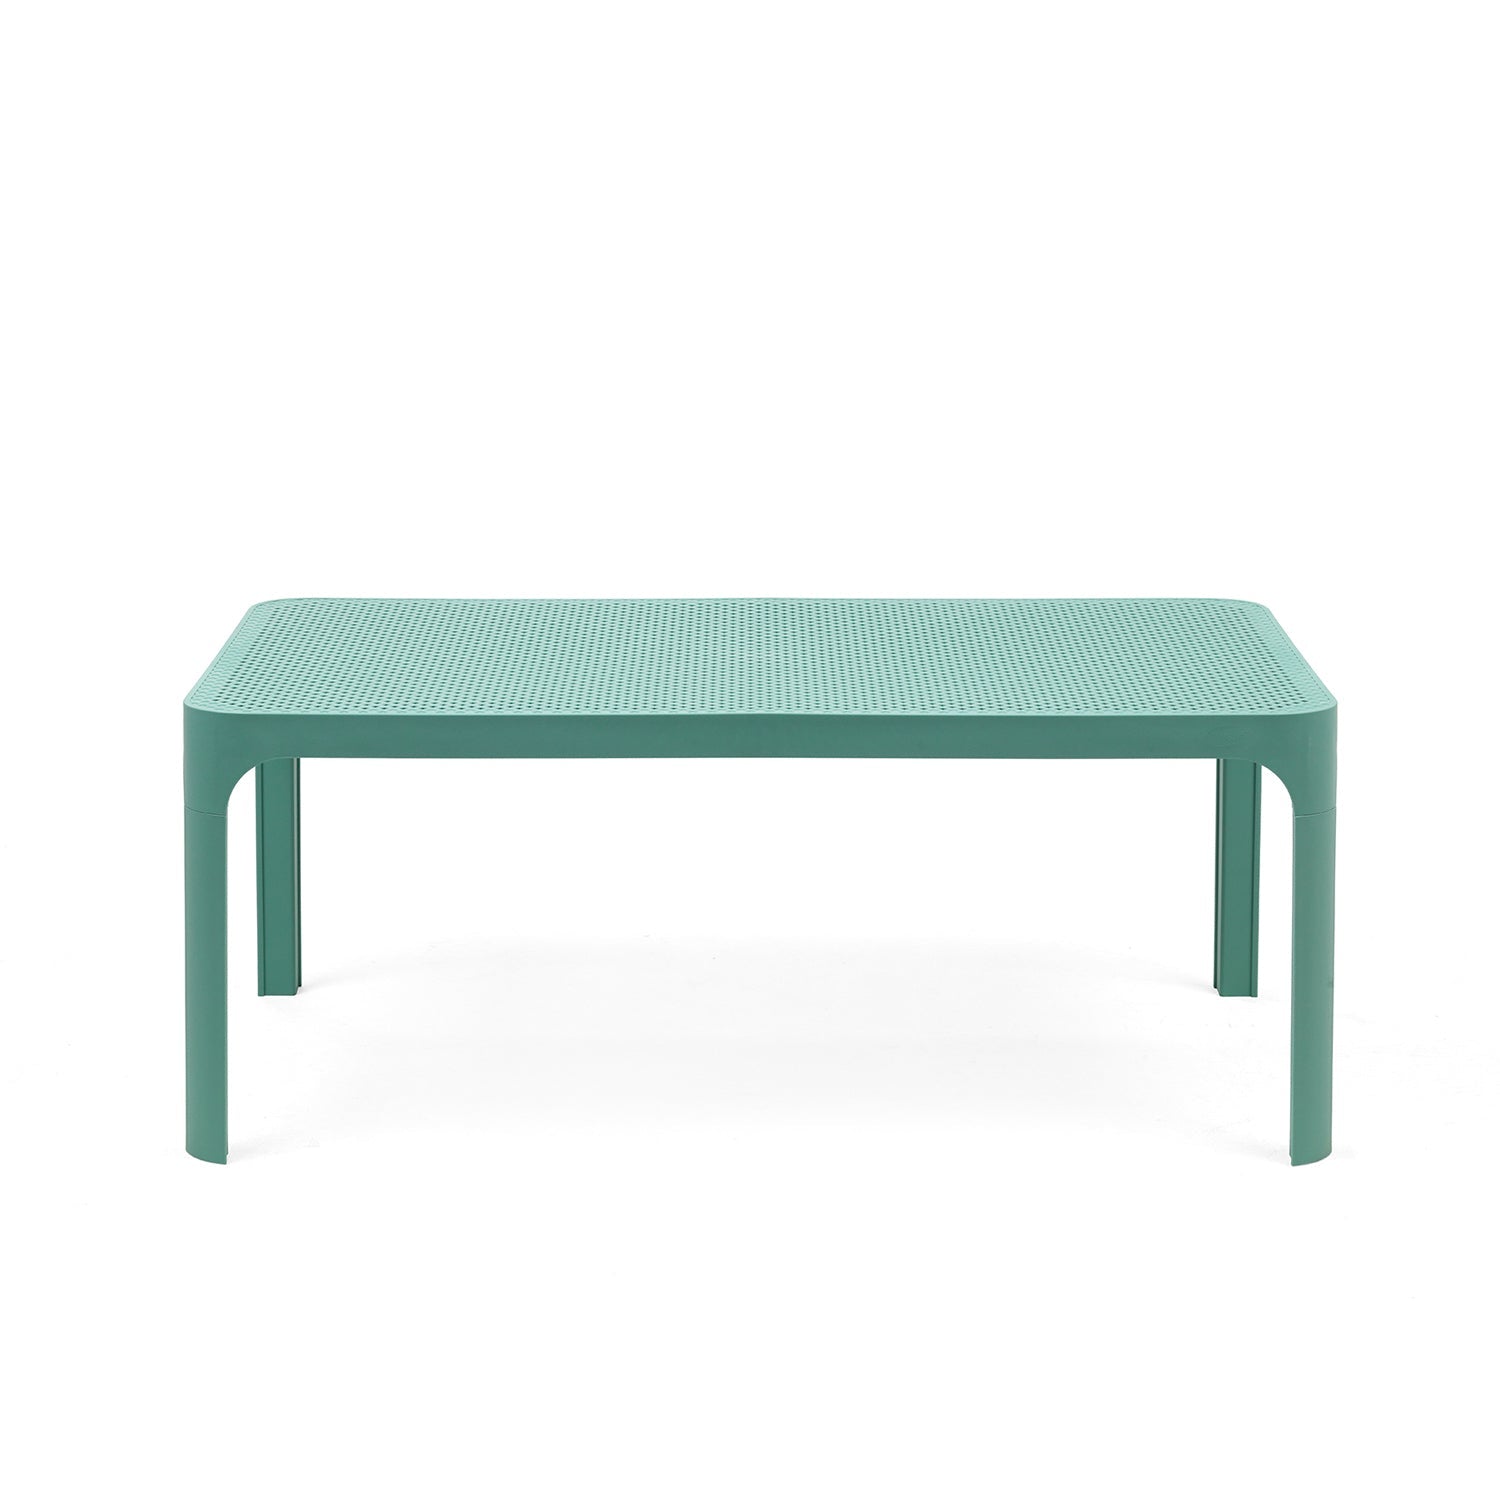 Turquoise Net Garden Table 100cm